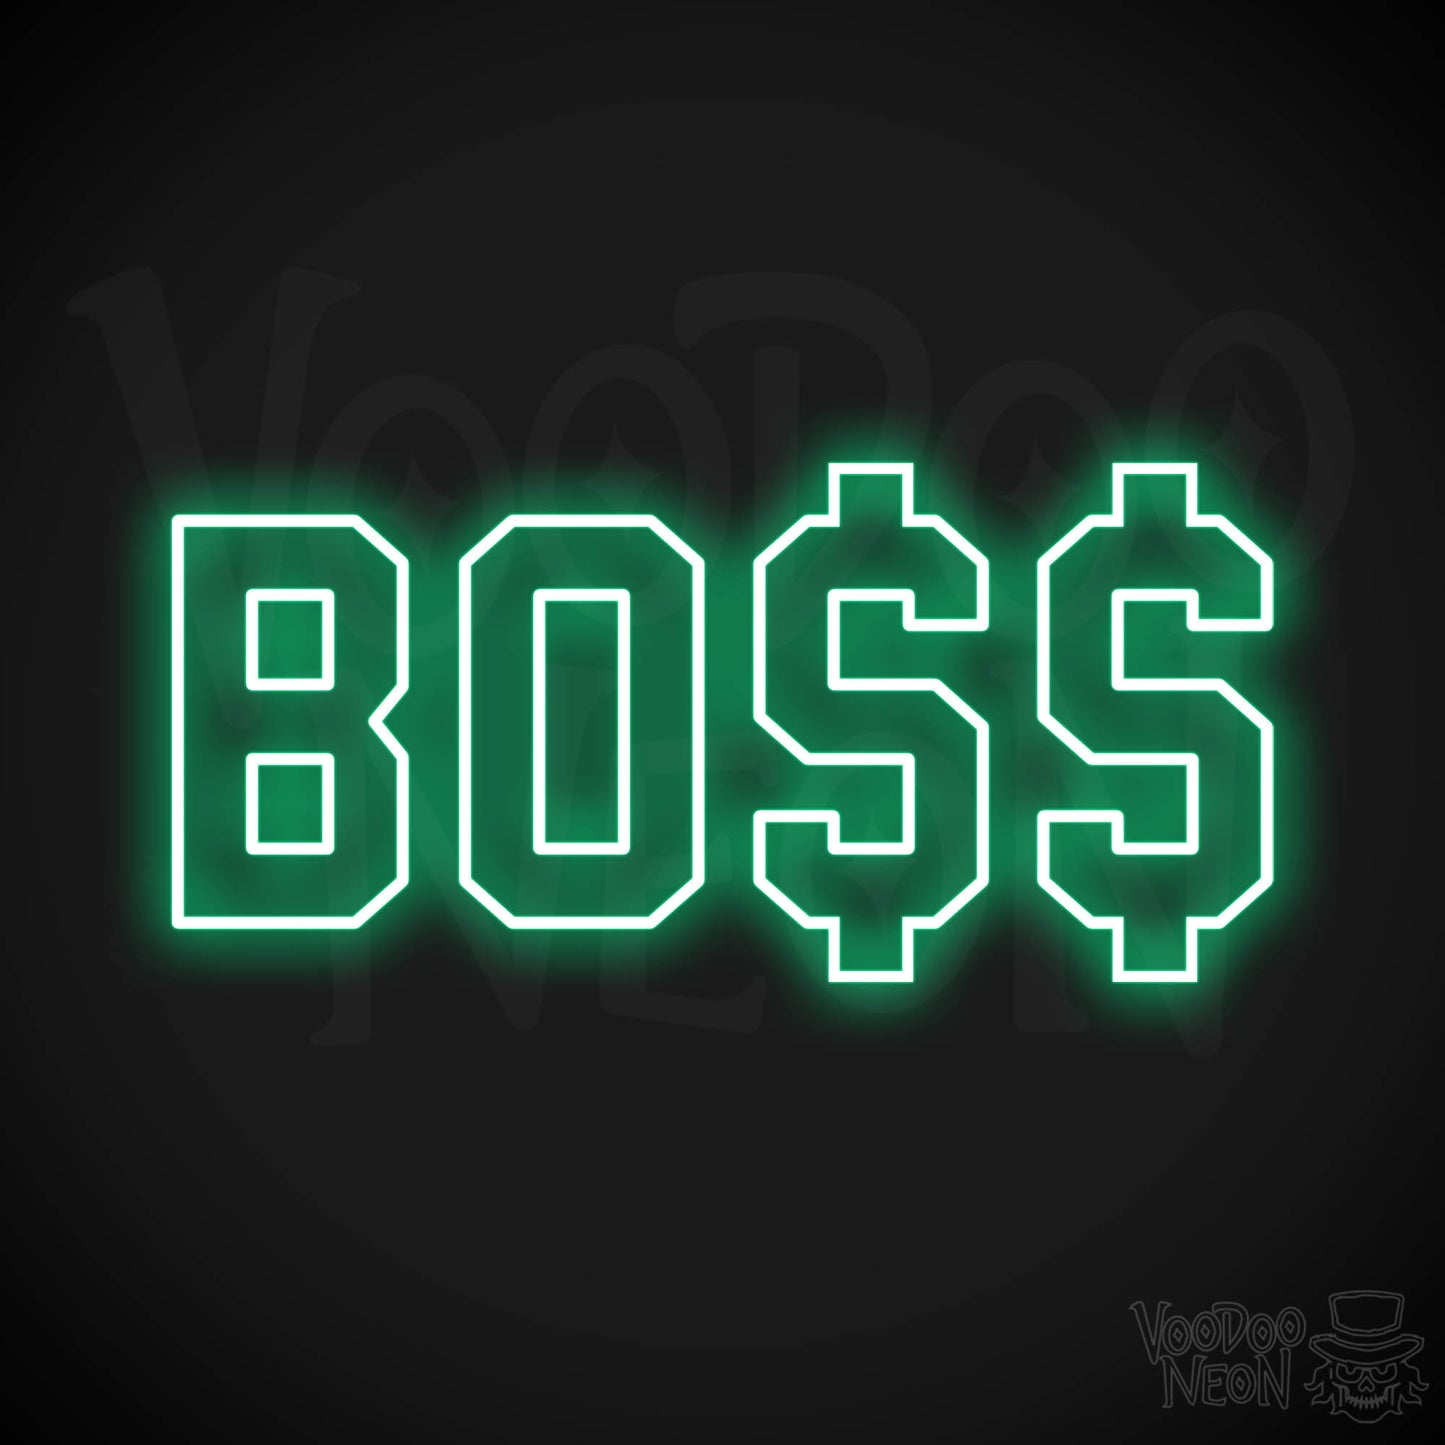 Boss LED Neon - Green